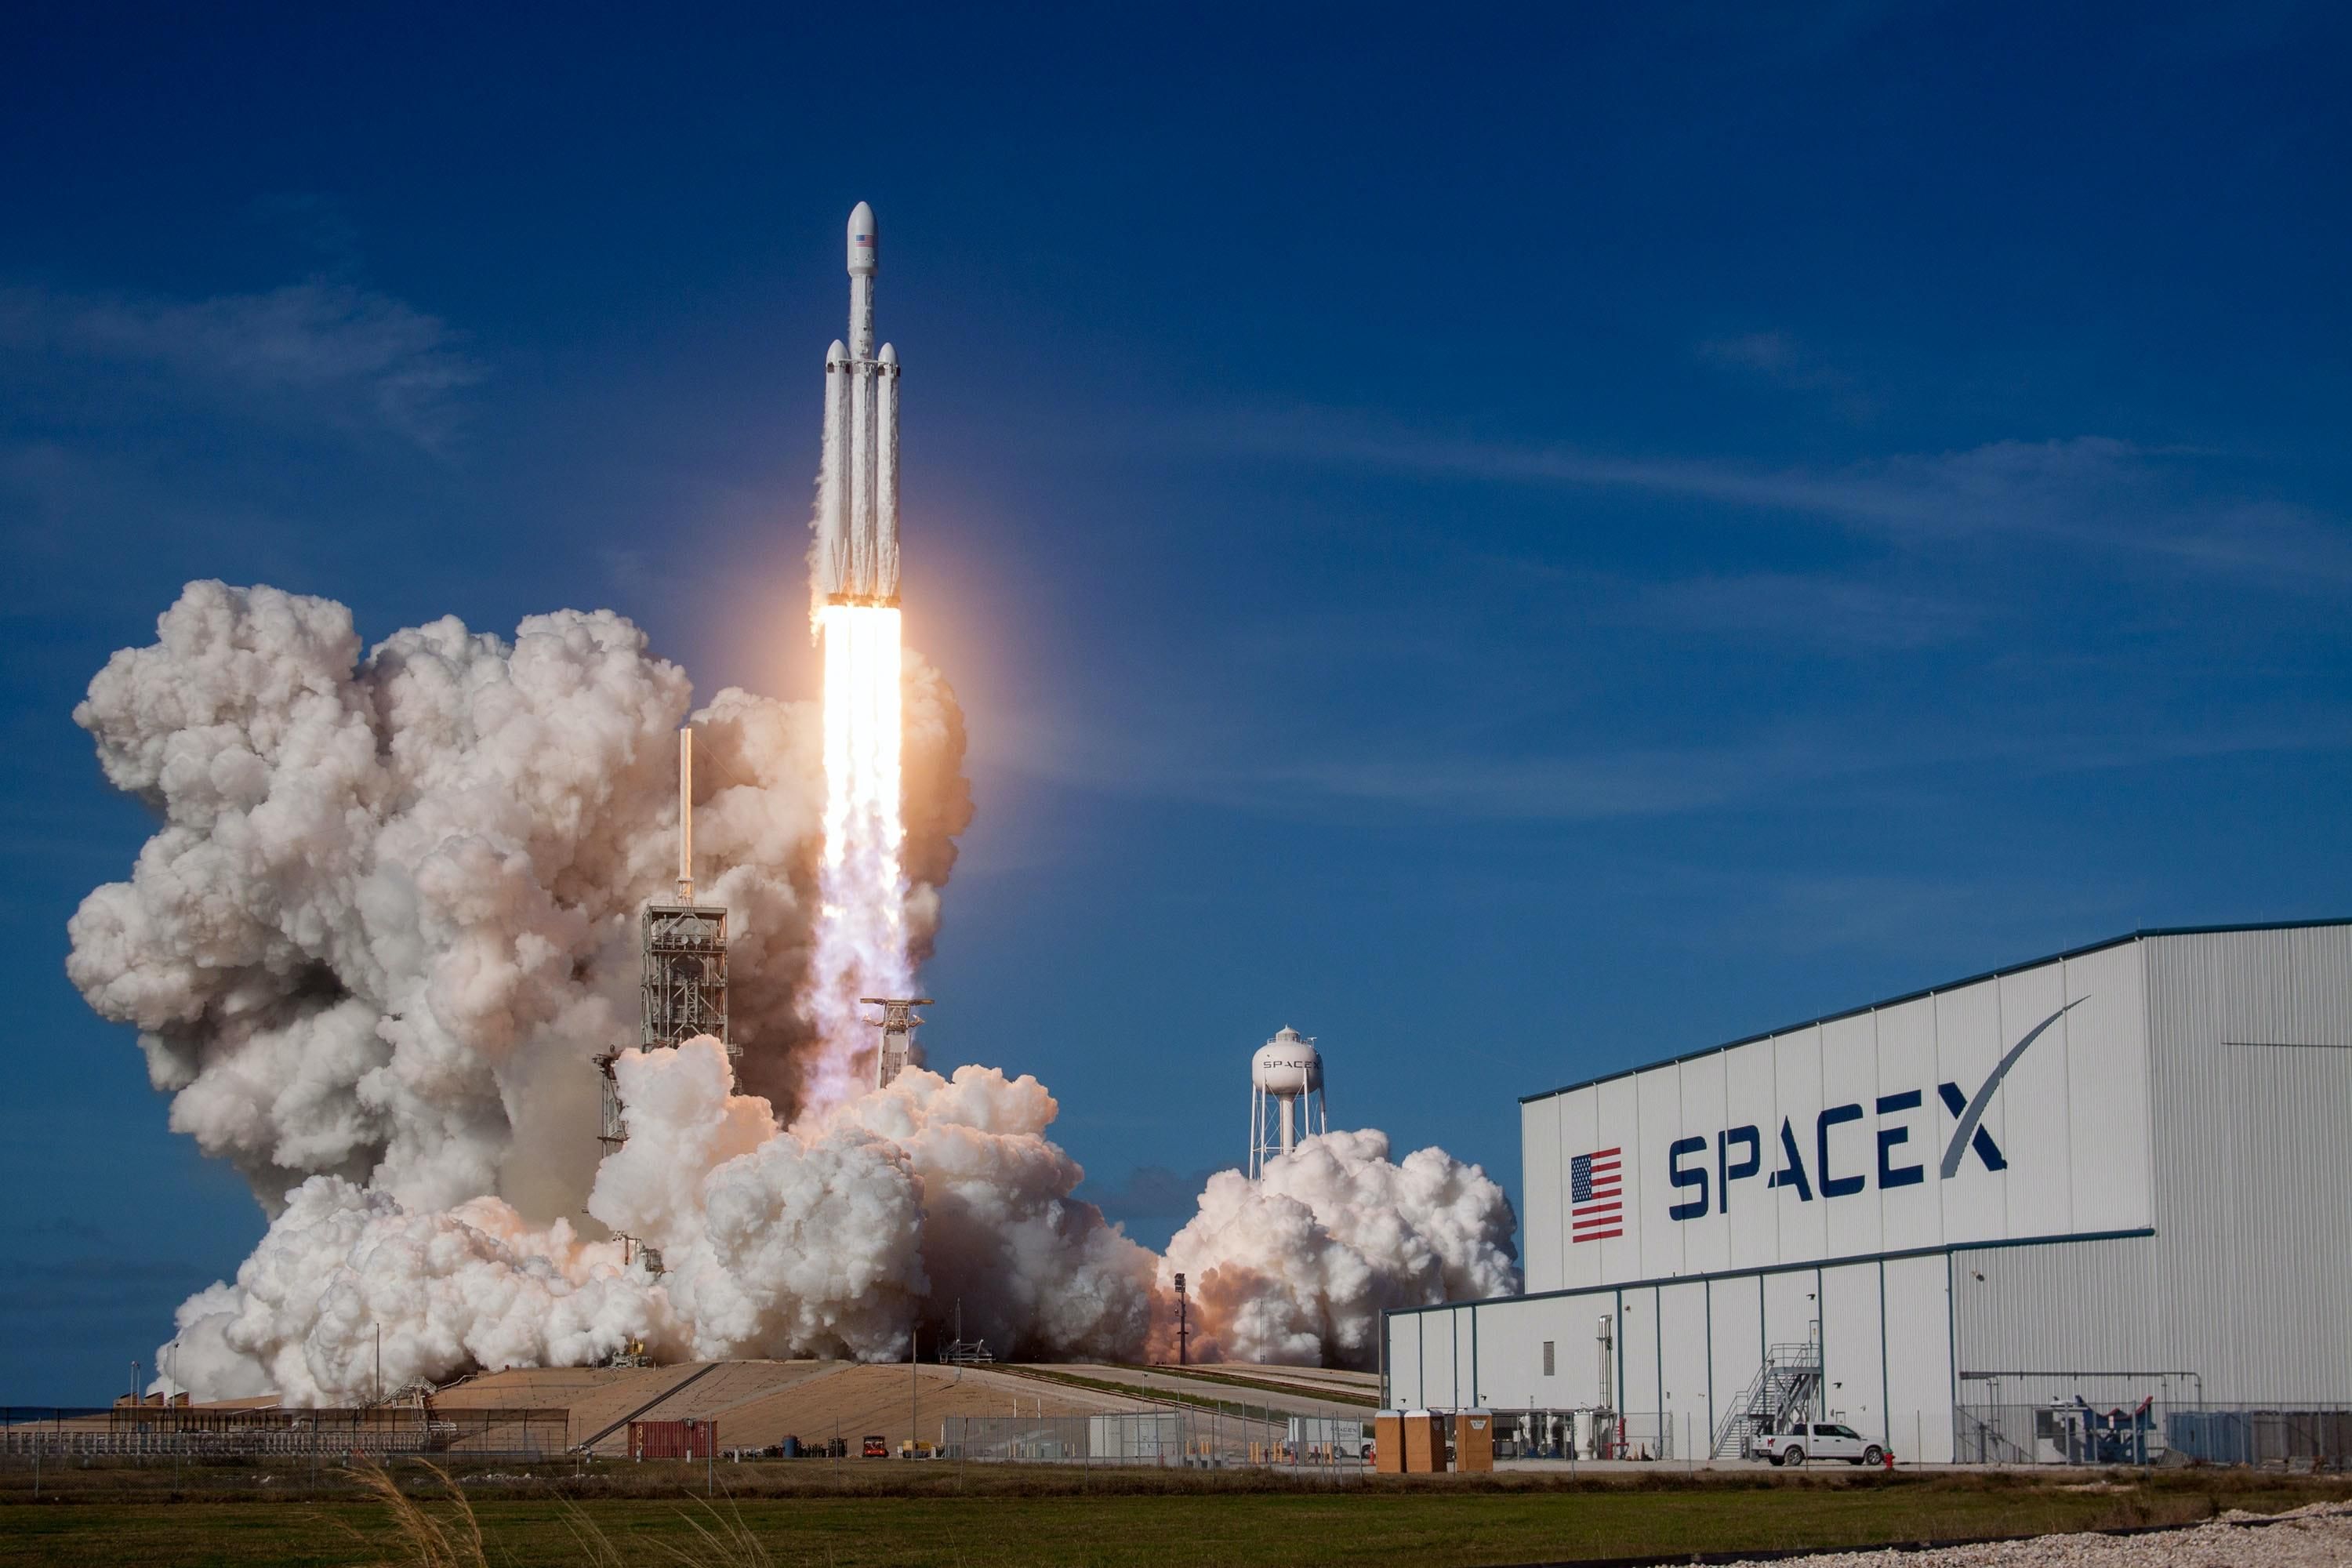 Илон Маск стал еще богаче: капитализация SpaceX превысила 100 миллиардов долларов - Финансы